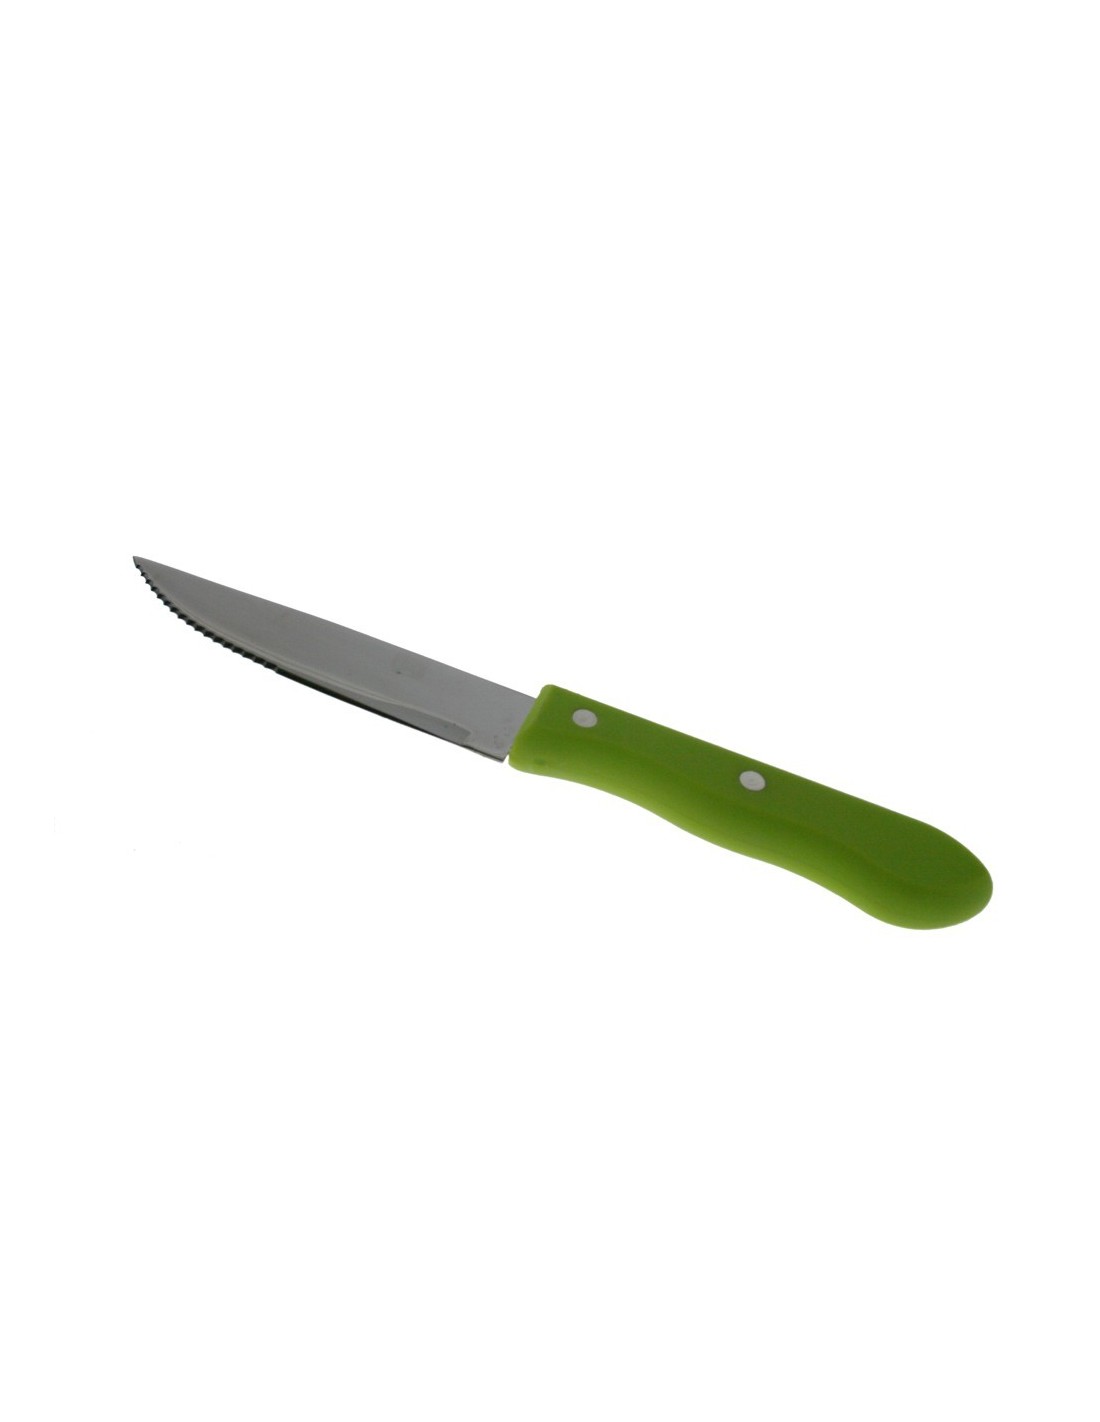 Couteau avec lame de scie avec ustensile de cuisine manche vert